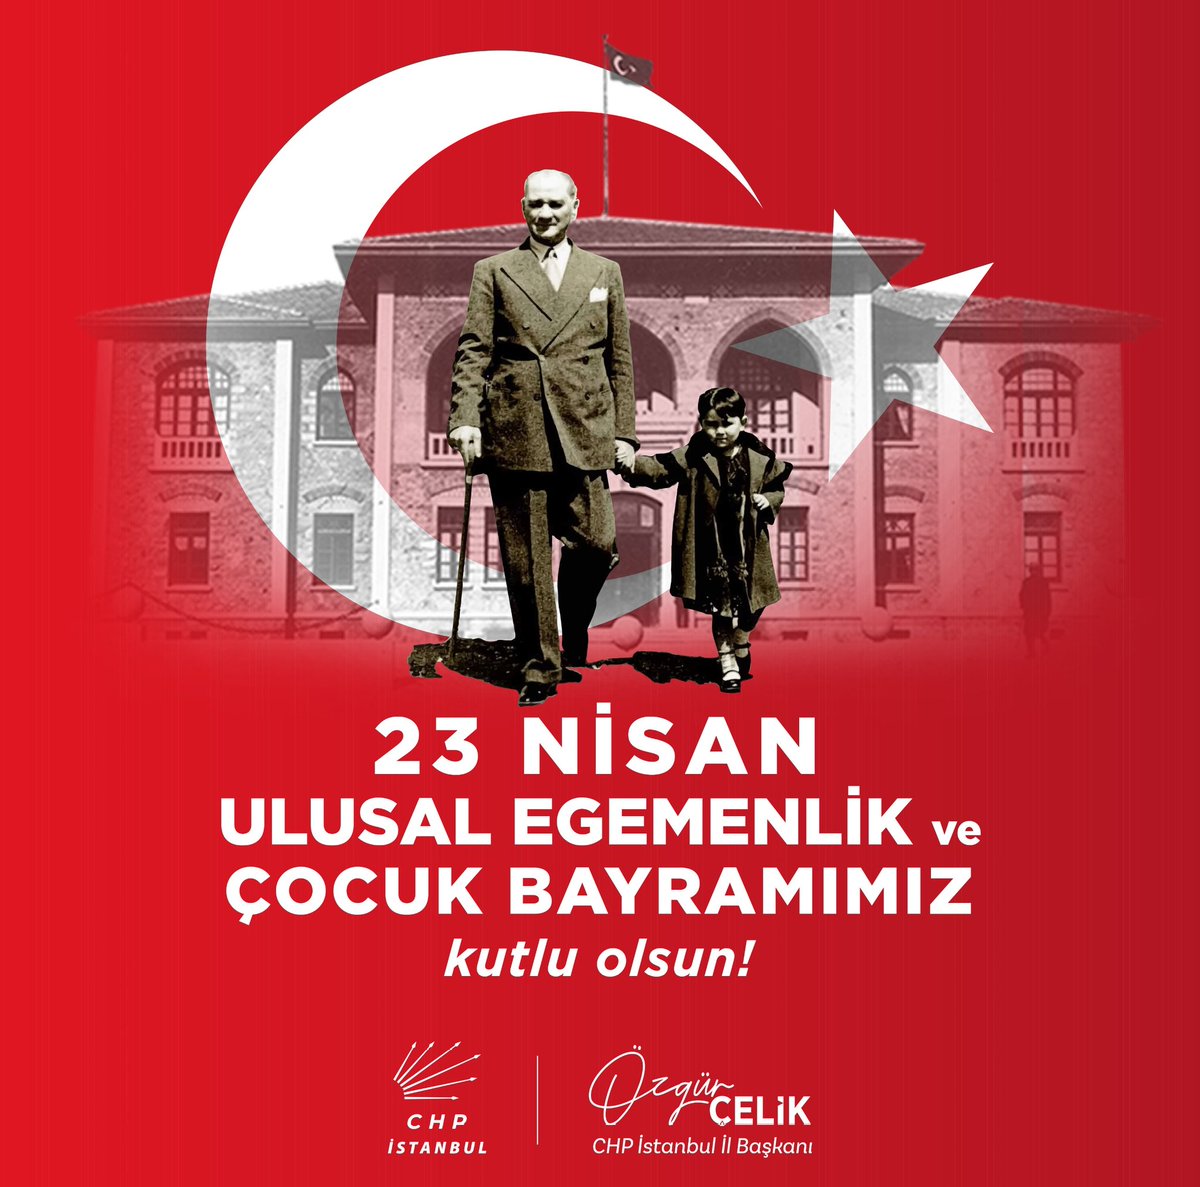 Egemenliğimizin ve bağımsızlığımızın simgesi Gazi Meclisimizin kuruluşunu tüm Dünya çocuklarına armağan eden Gazi Mustafa Kemal Atatürk ve mücadele arkadaşlarını saygı, sevgi ve özlemle anıyoruz. 23 Nisan Ulusal Egemenlik ve Çocuk Bayramımız kutlu olsun!🇹🇷